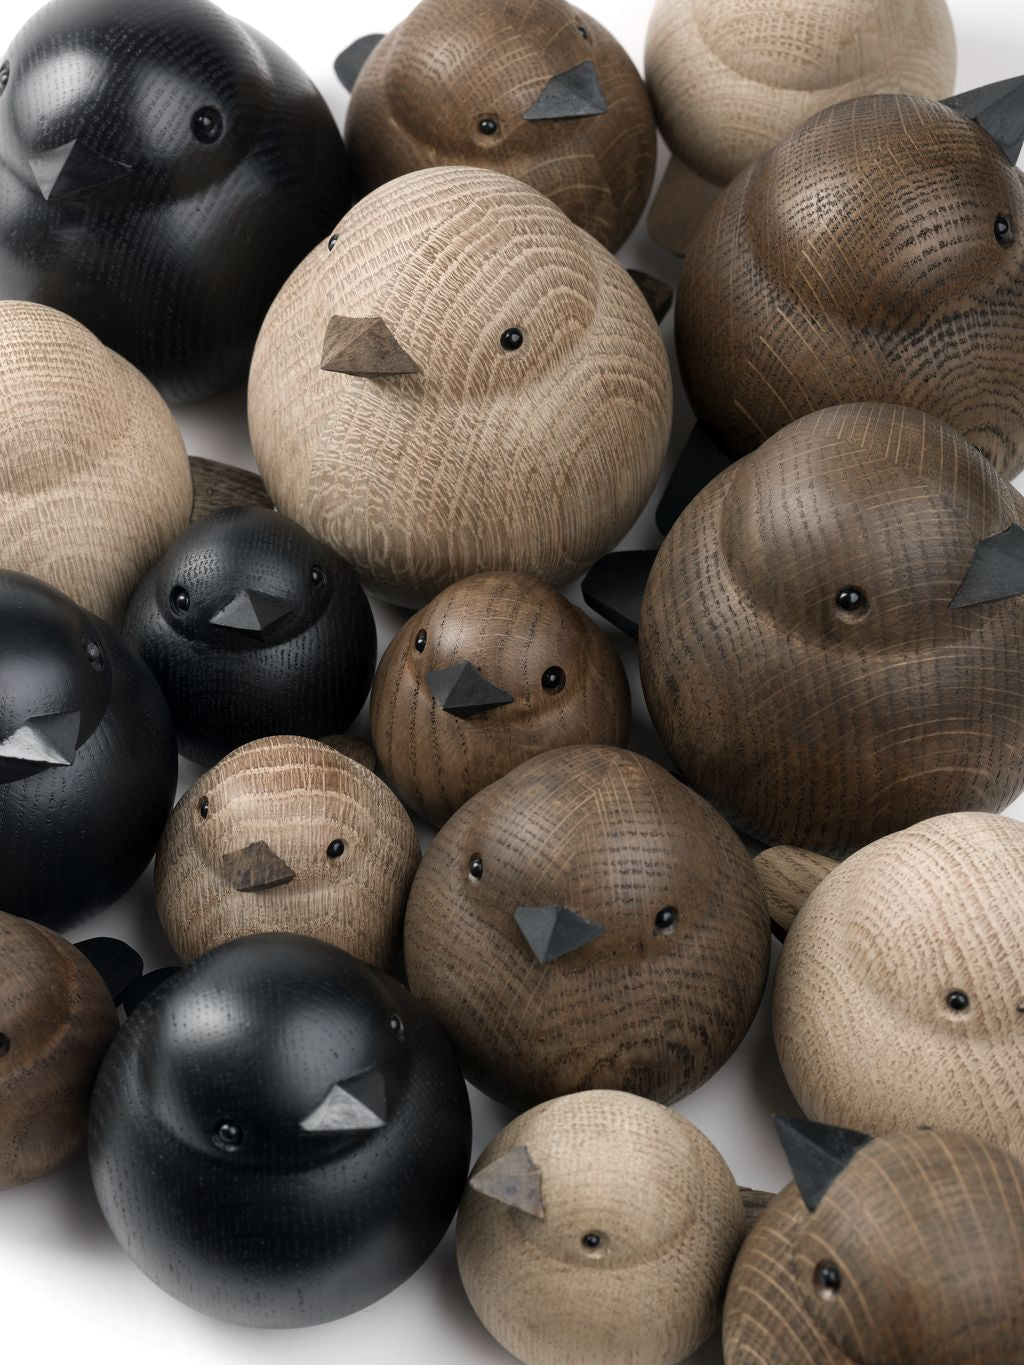 Novoform Design Baby Sparrow dekorativ figur, mörk färgad ek